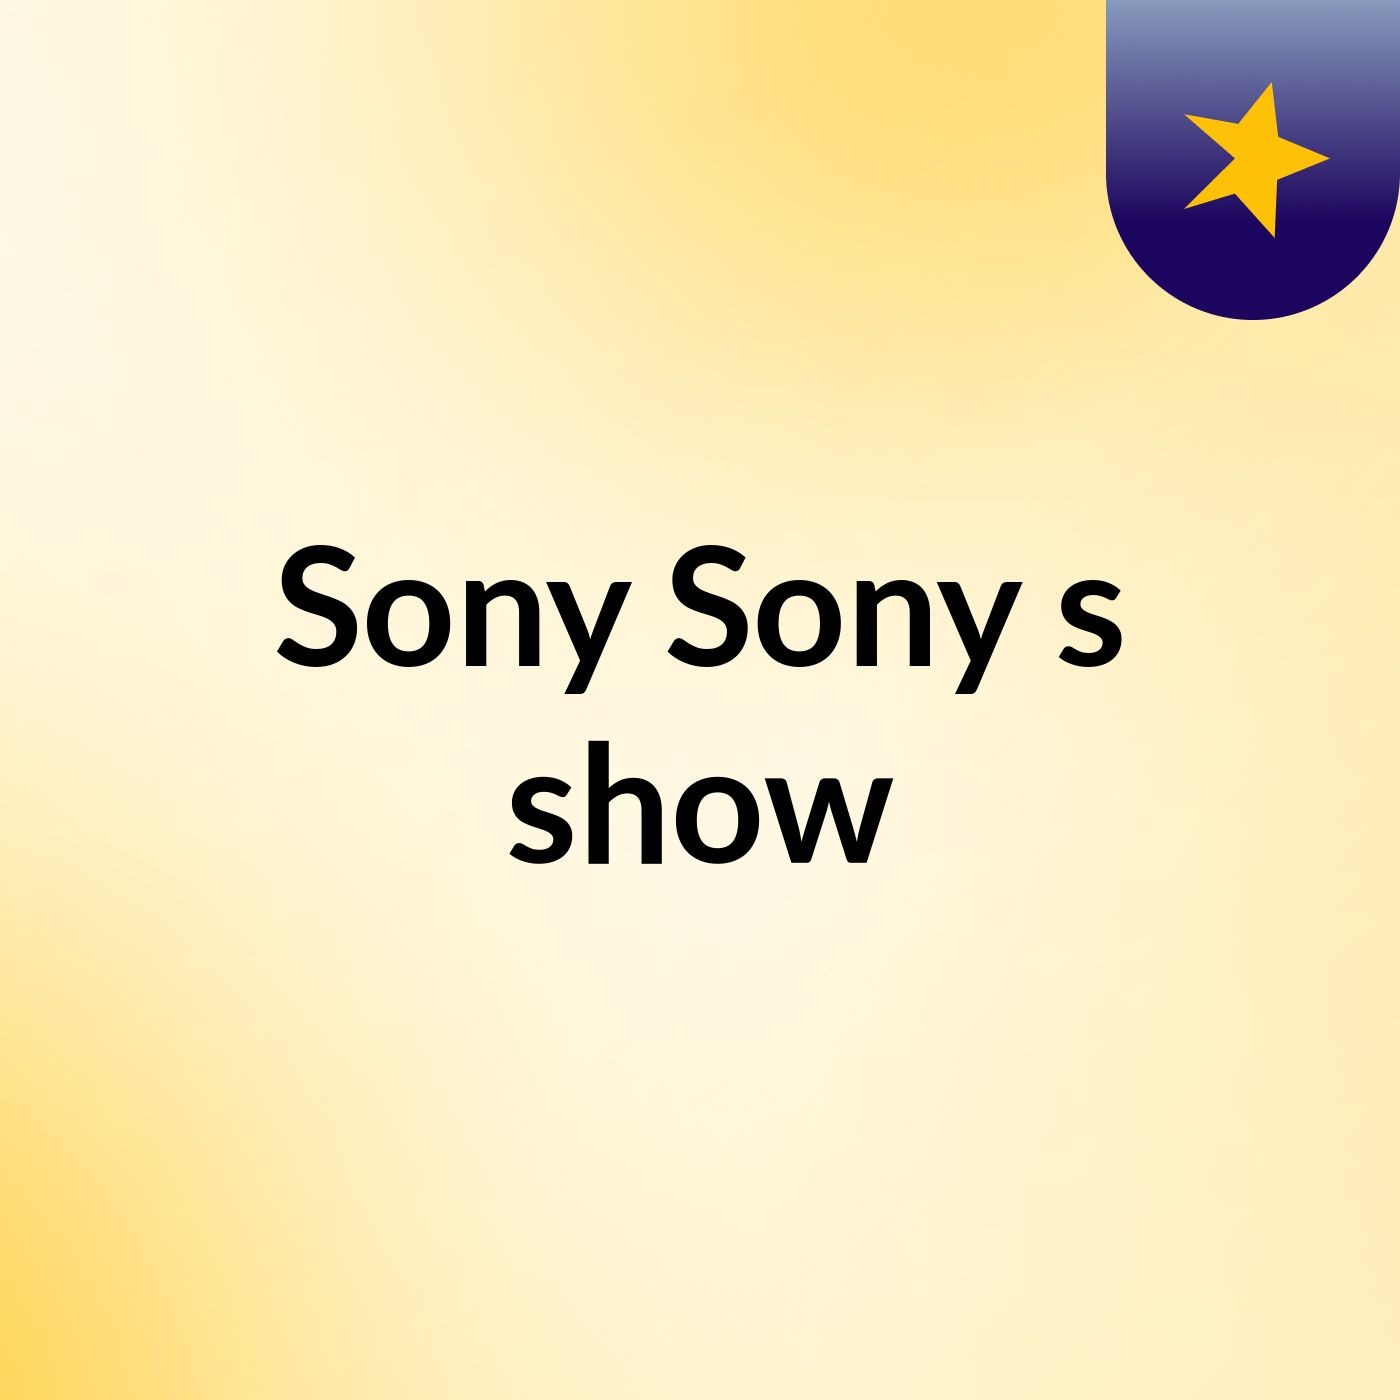 Sony Sony's show